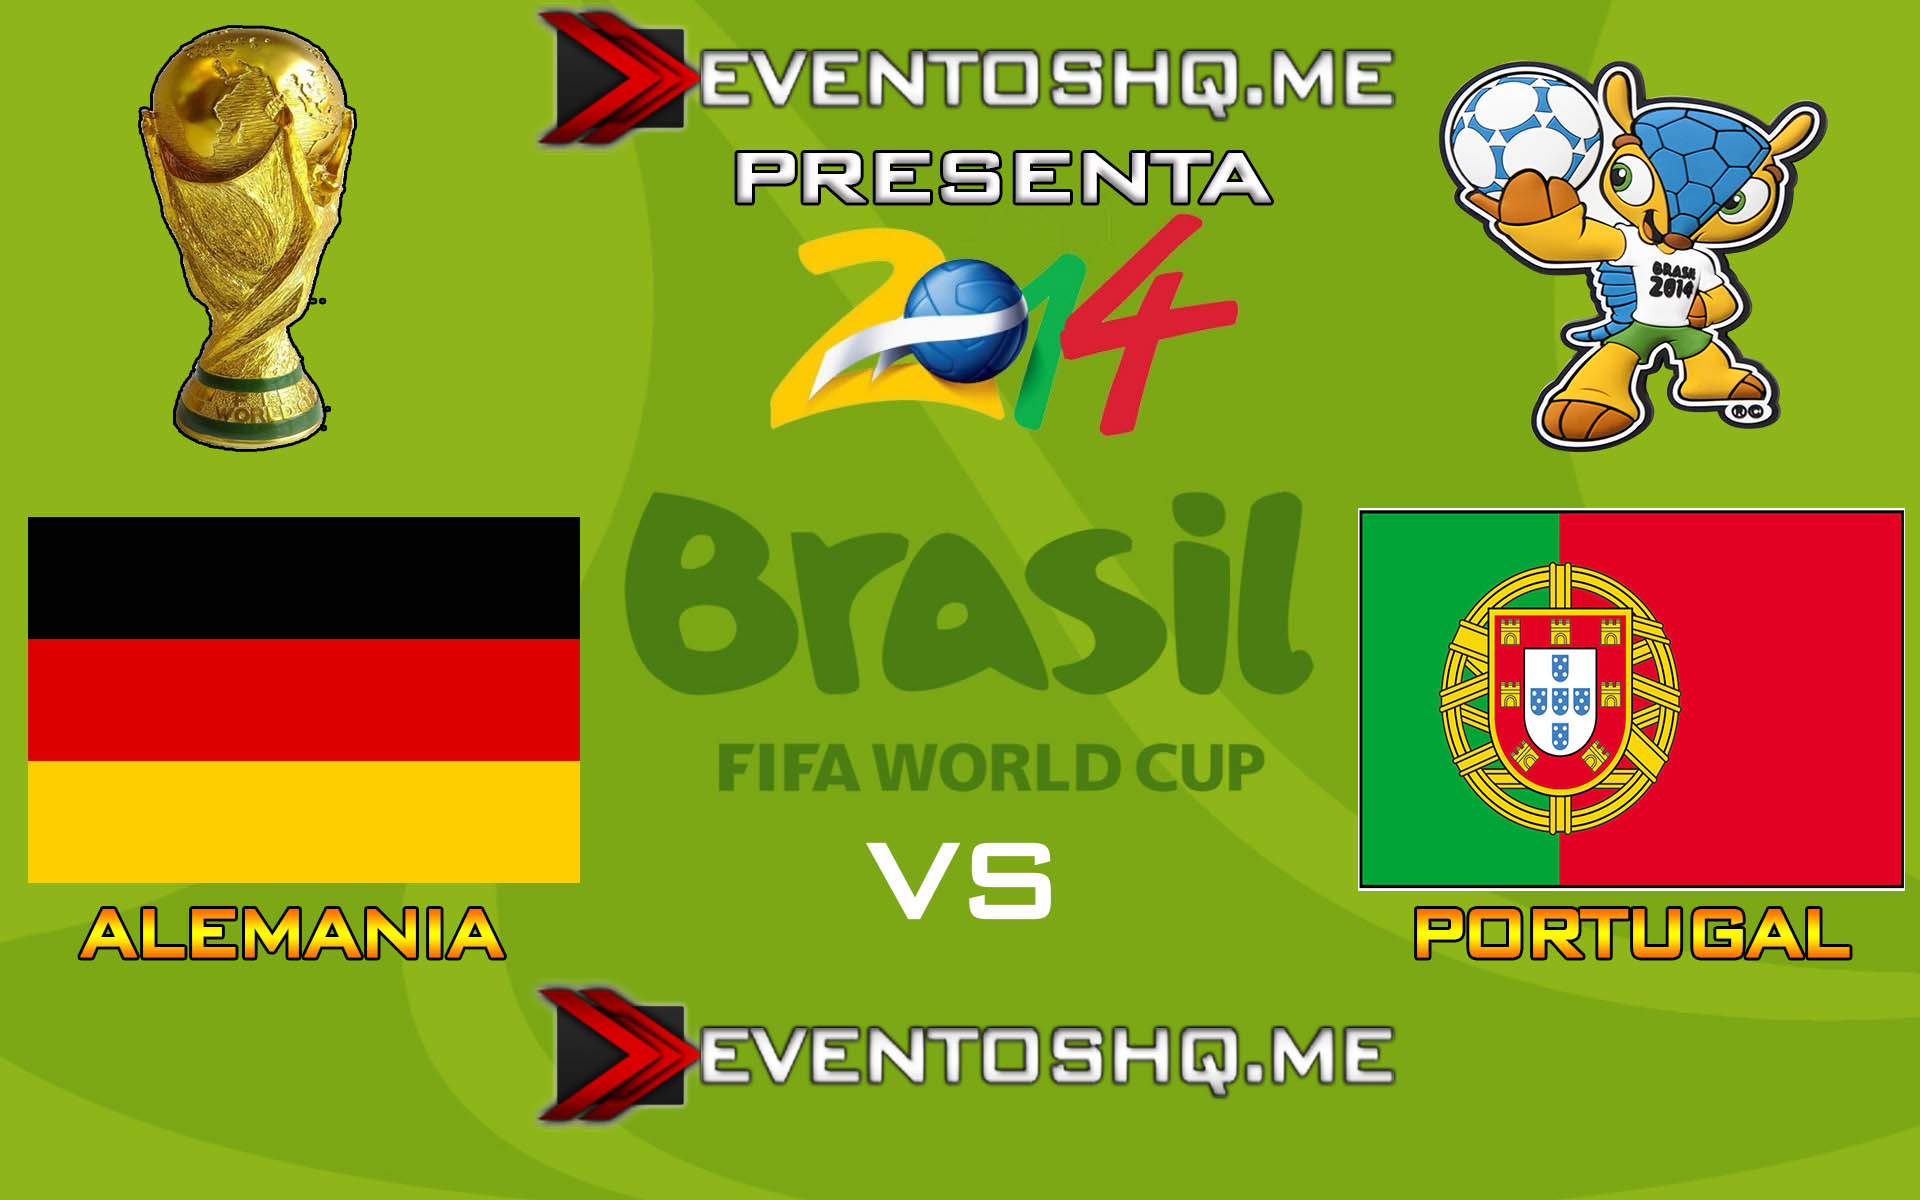 Ver en Vivo Alemania vs Portugal Mundial Brasil 2014 www.eventoshq.me